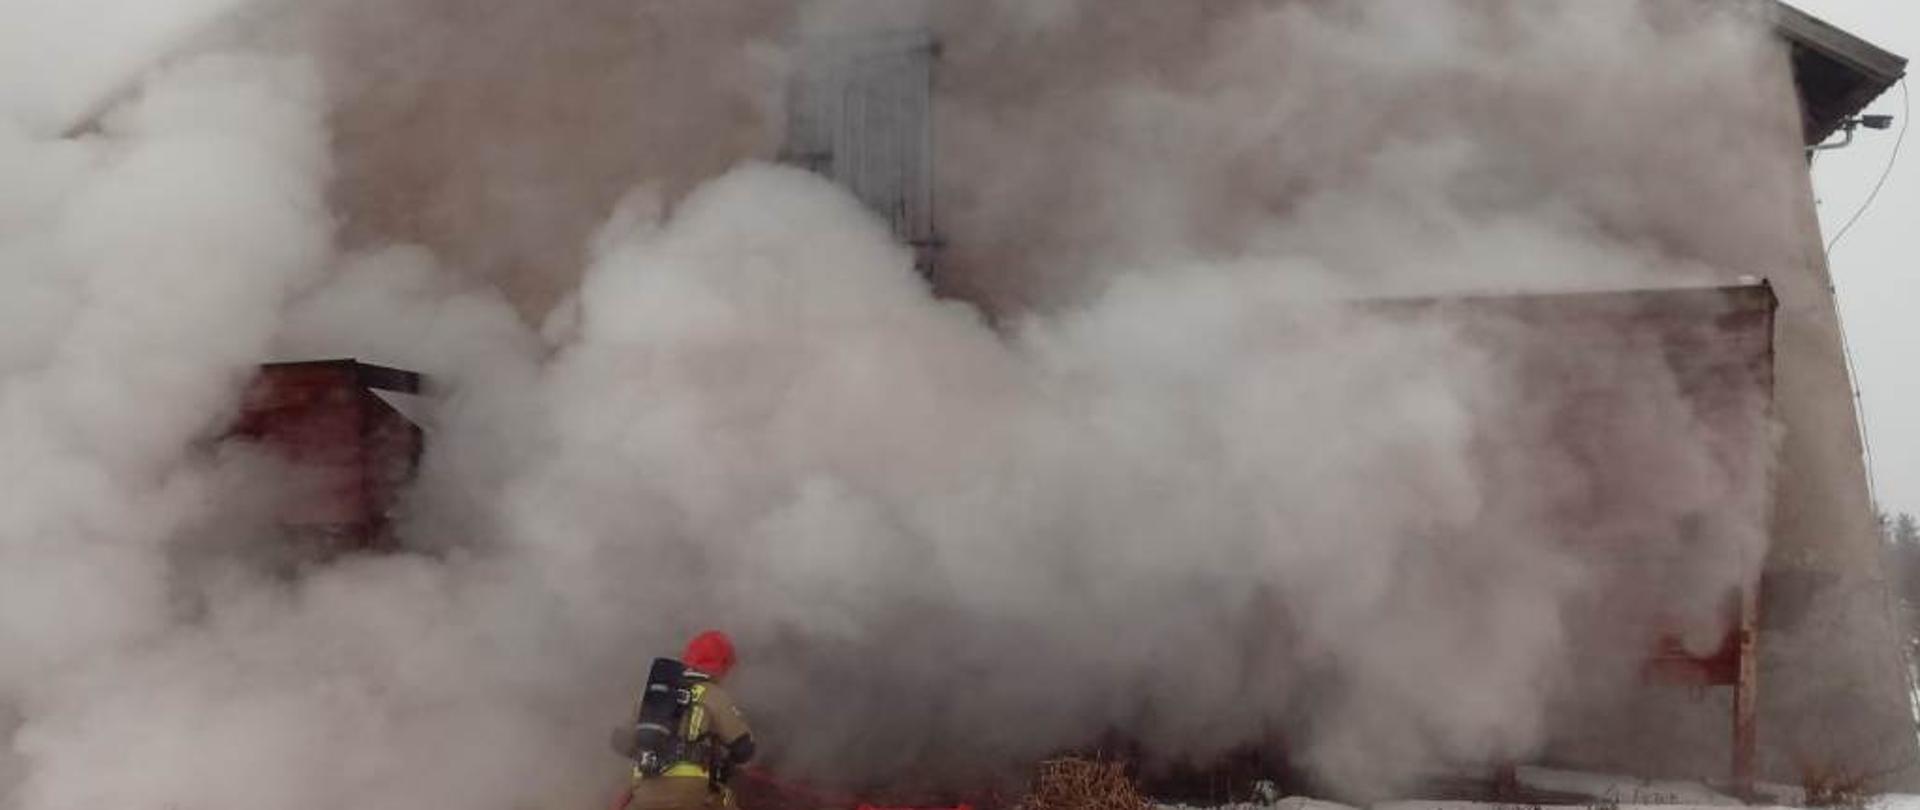 Budynek kurnika, z okien i bram wydobywają się kłęby dymu, strażak z linią gaśniczą podający prąd wody do wnętrza budynku